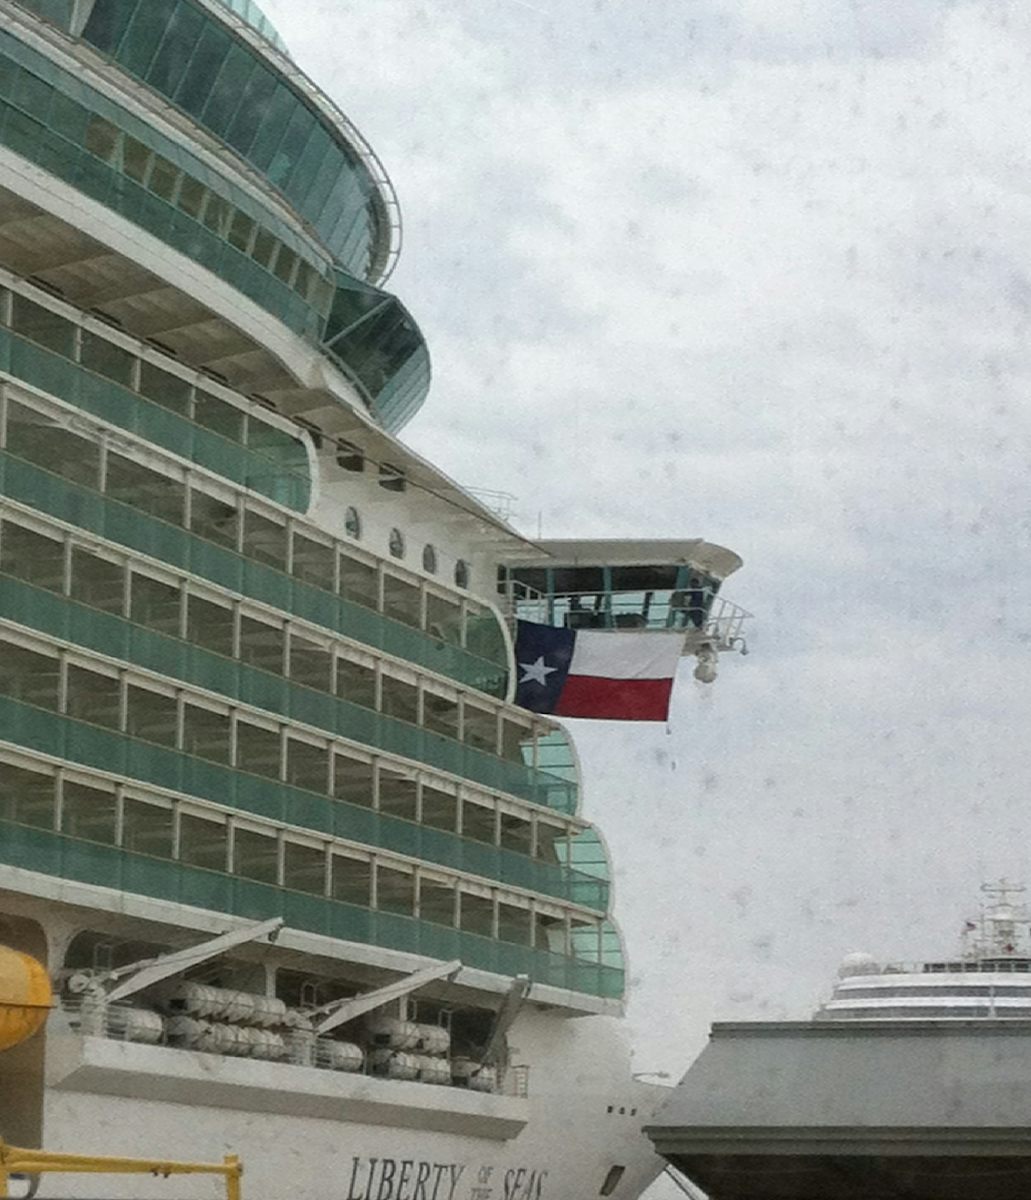 Flying the Texas flag in port - Galveston!